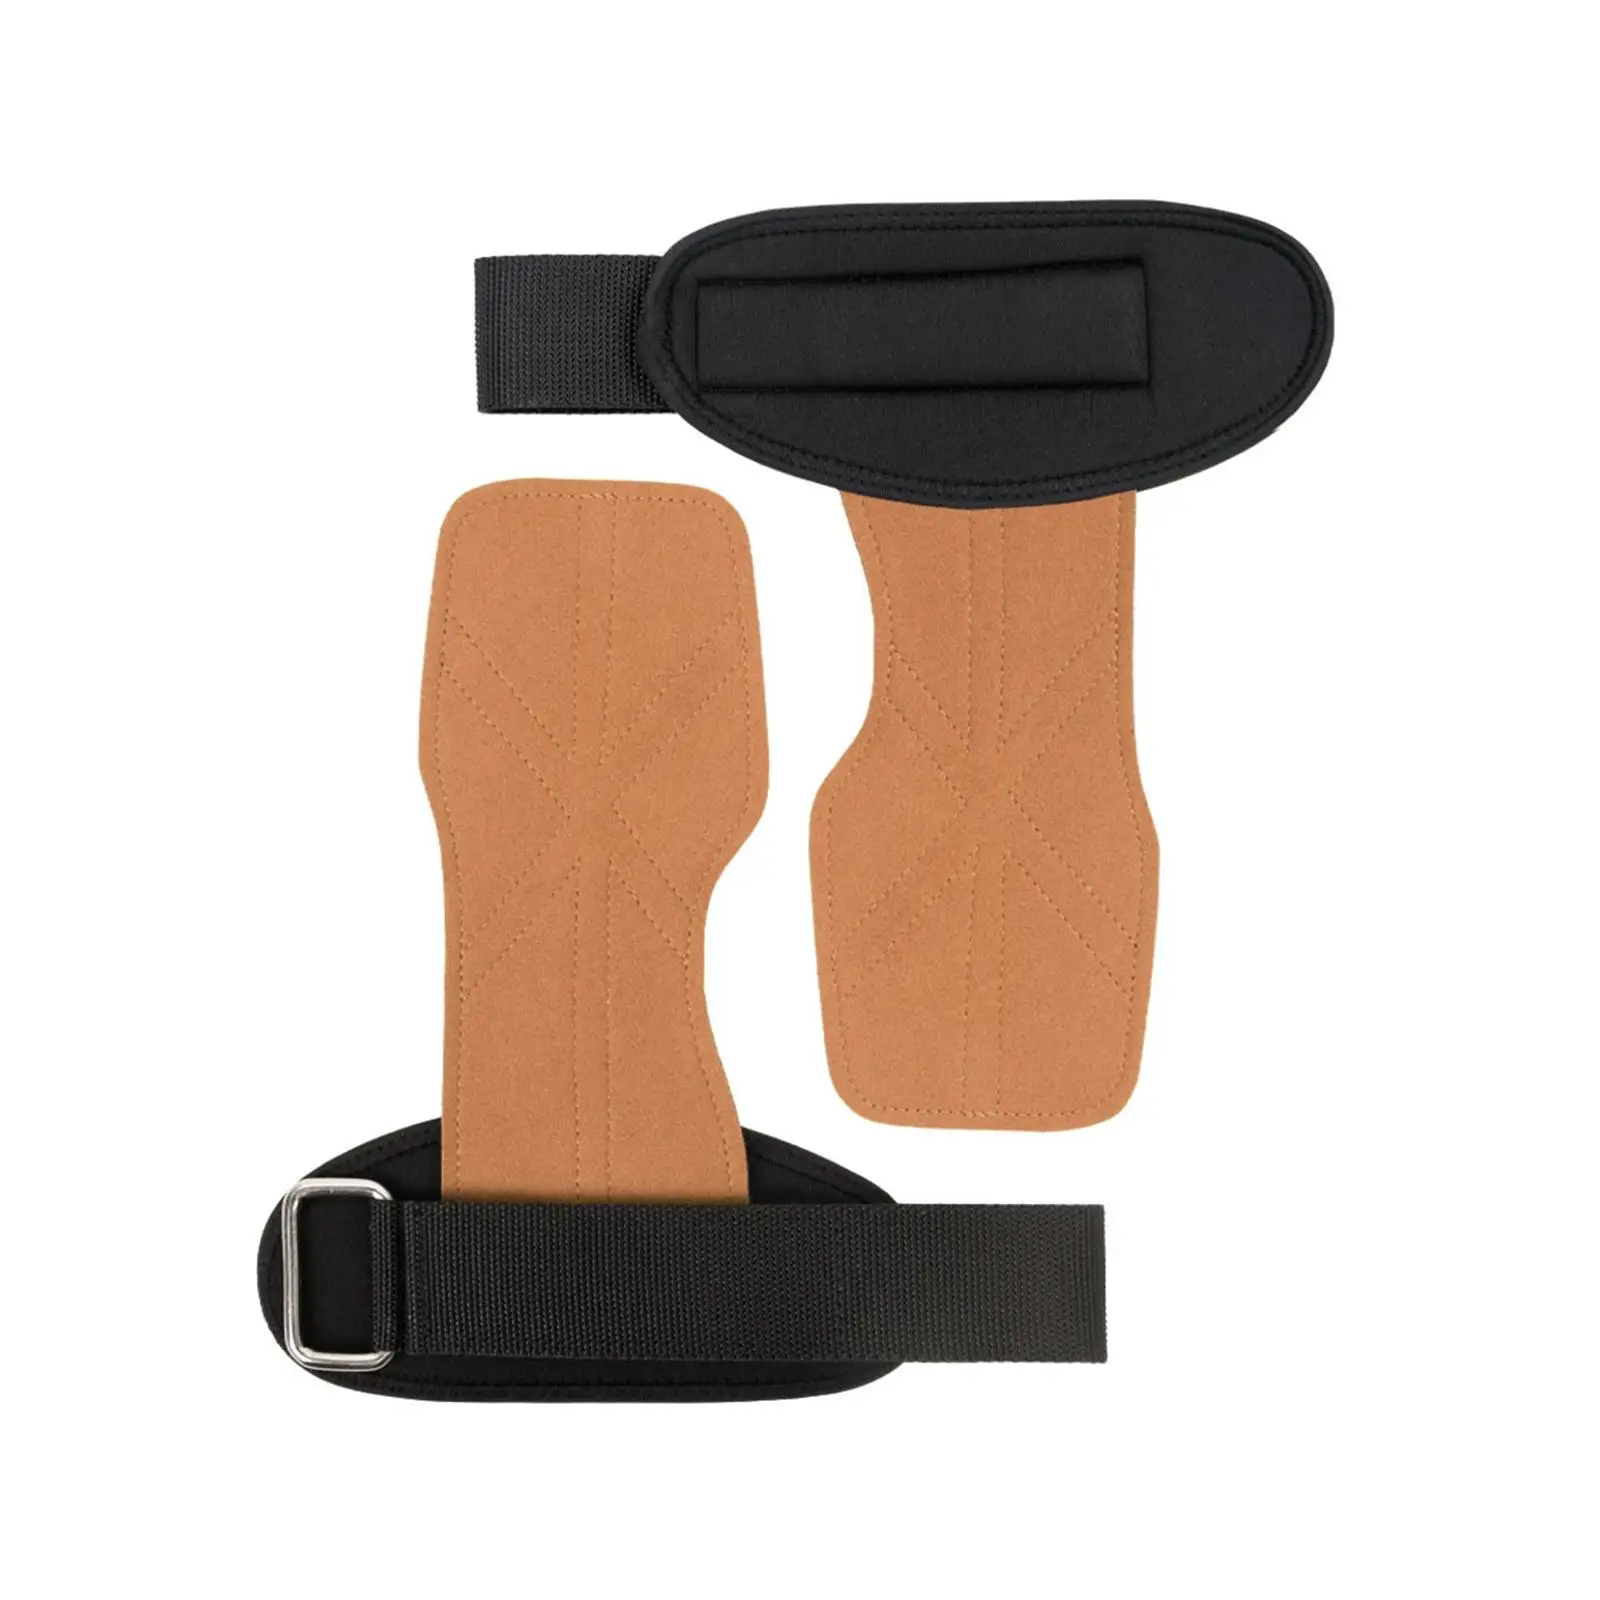 Lifting Wrist Straps Wear Resistance Premium Pull Ups Weight Lifting Hooks for Exercise Kettlebells Dumbbell Deadlift Men Women